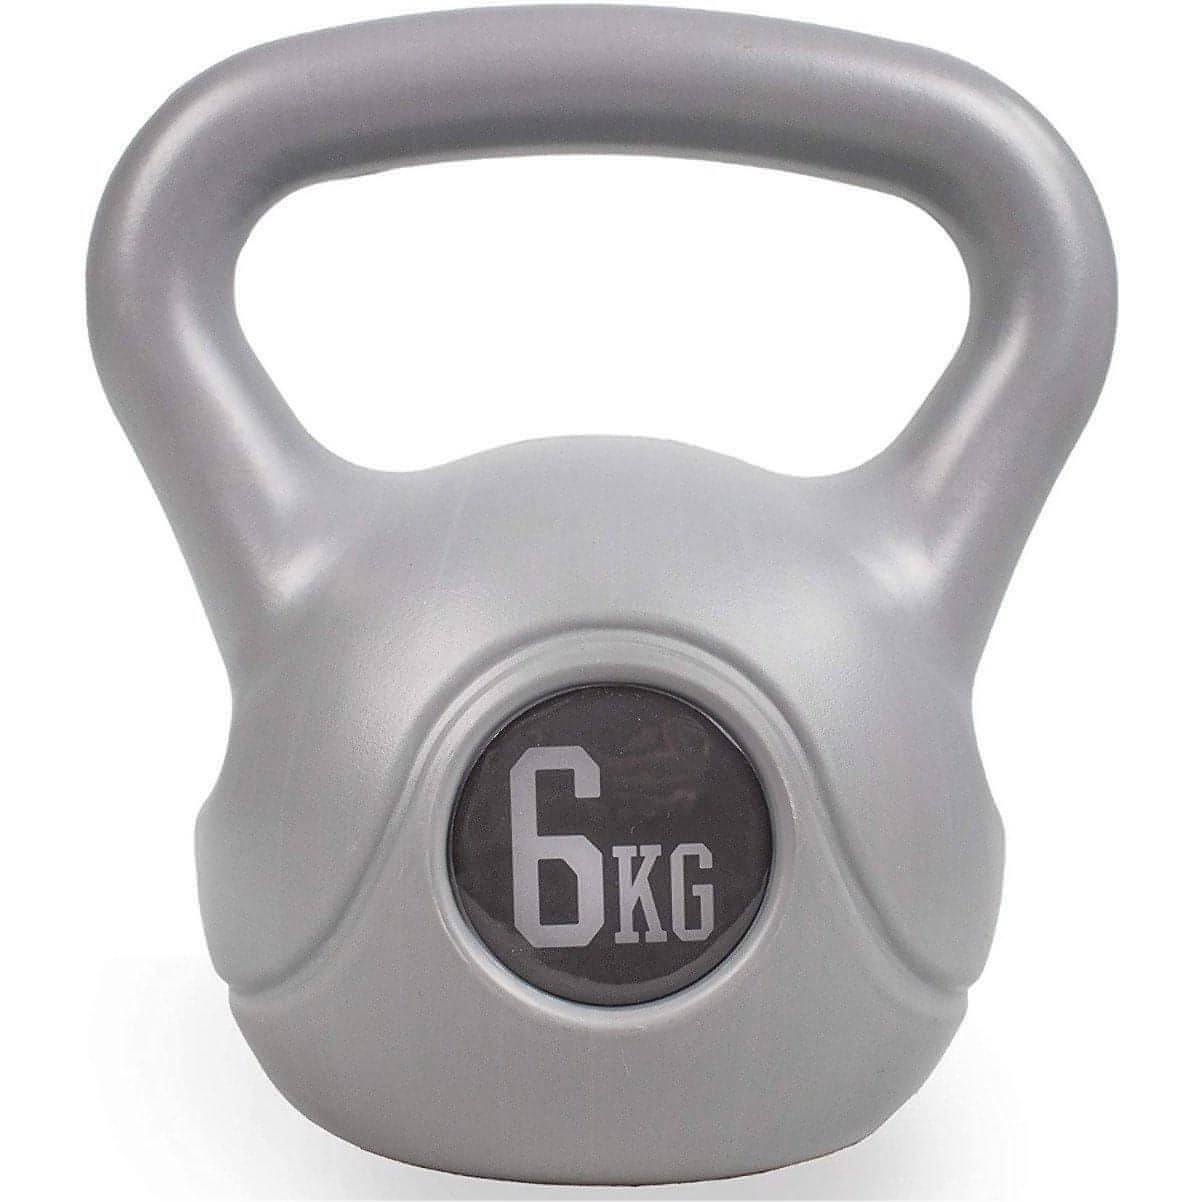 Phoenix Fitness 6kg Kettlebell - Grey 05029476804894 - Start Fitness